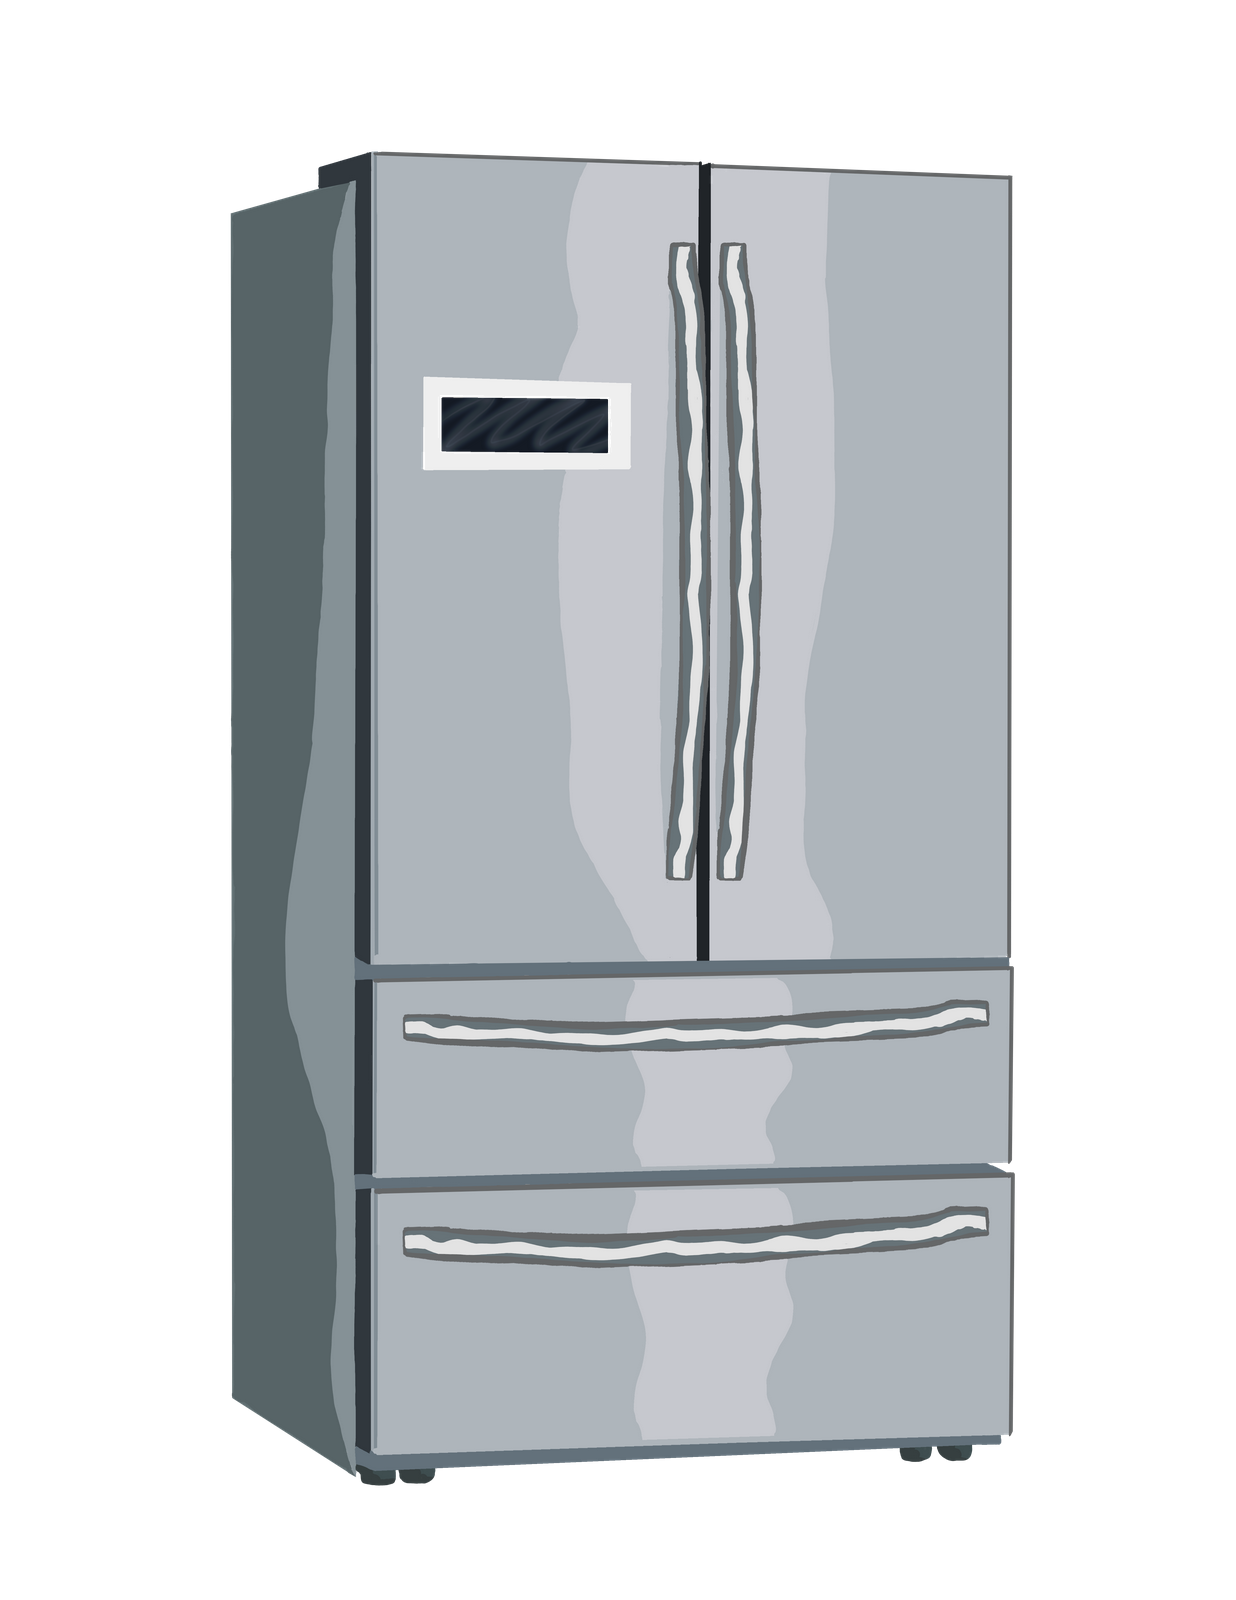 Amana Refrigerator Repair In Montreal